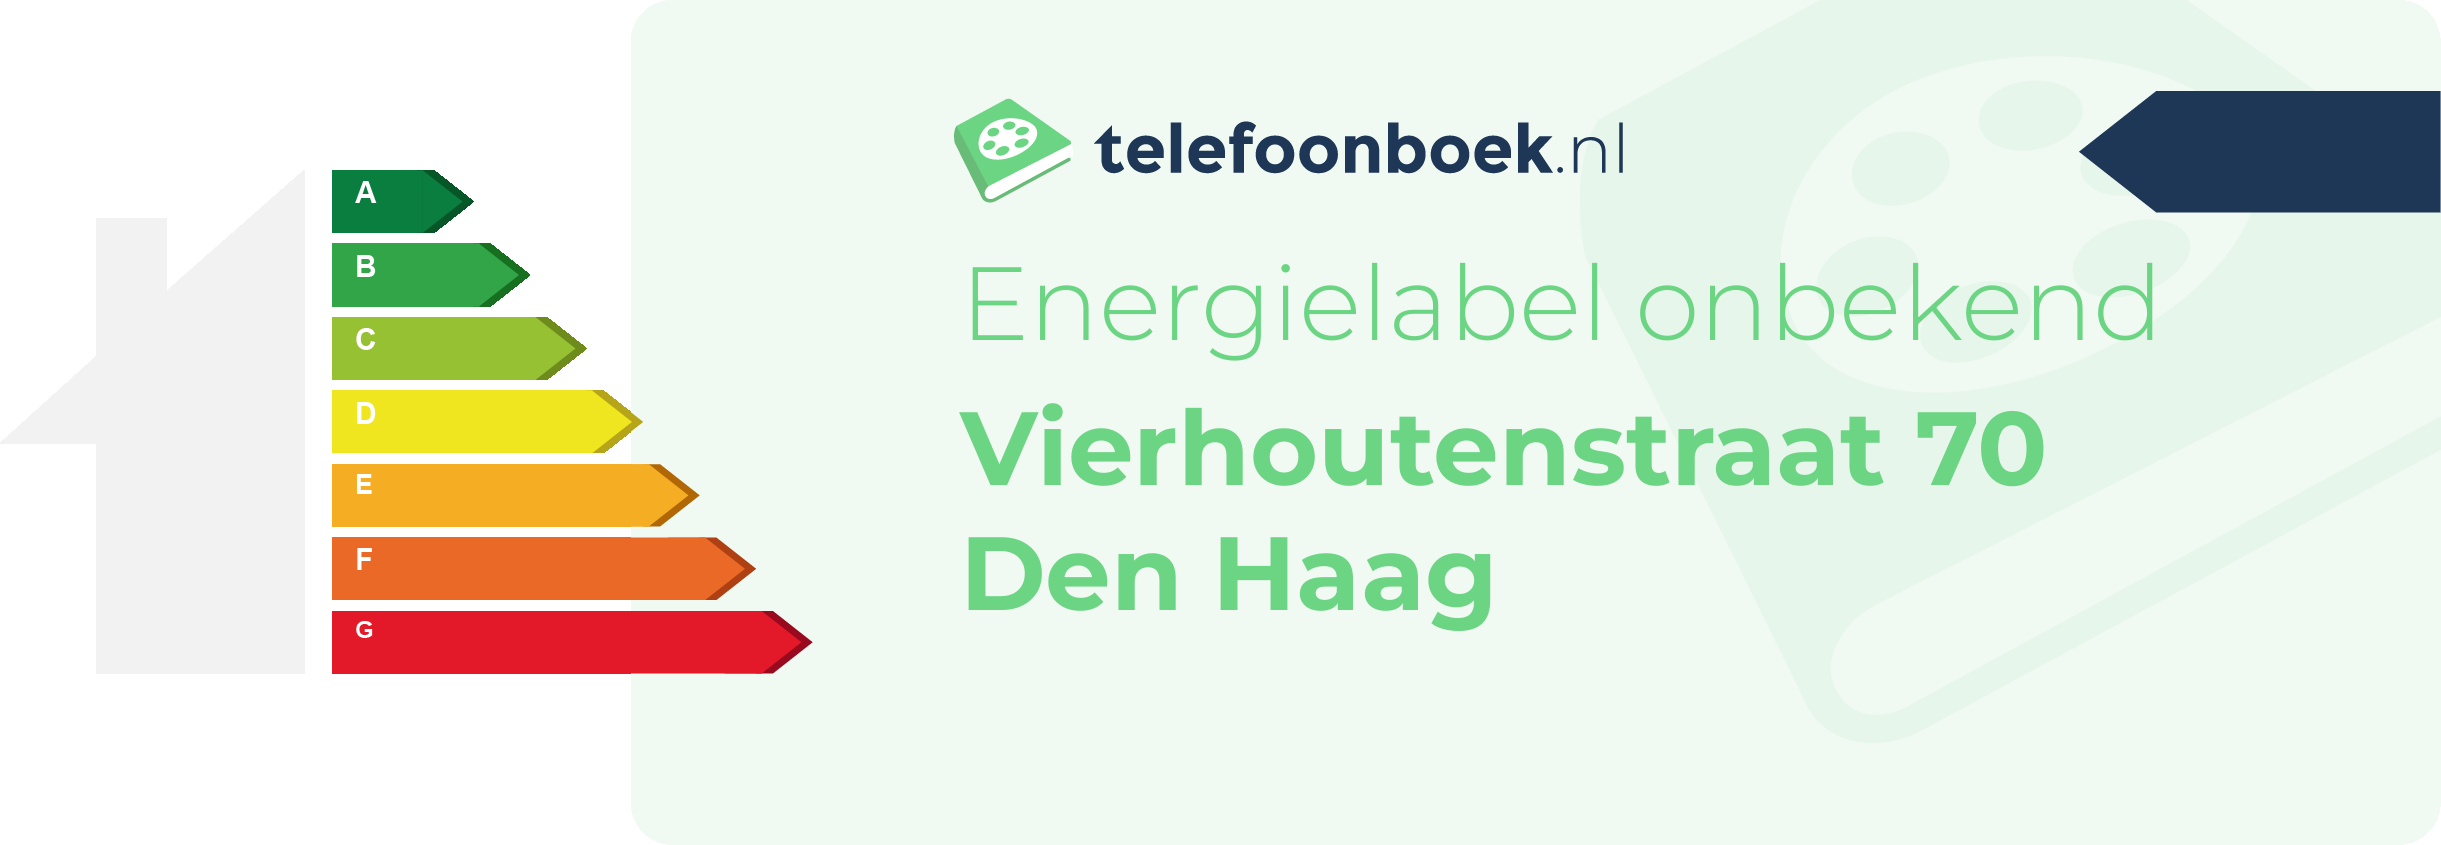 Energielabel Vierhoutenstraat 70 Den Haag